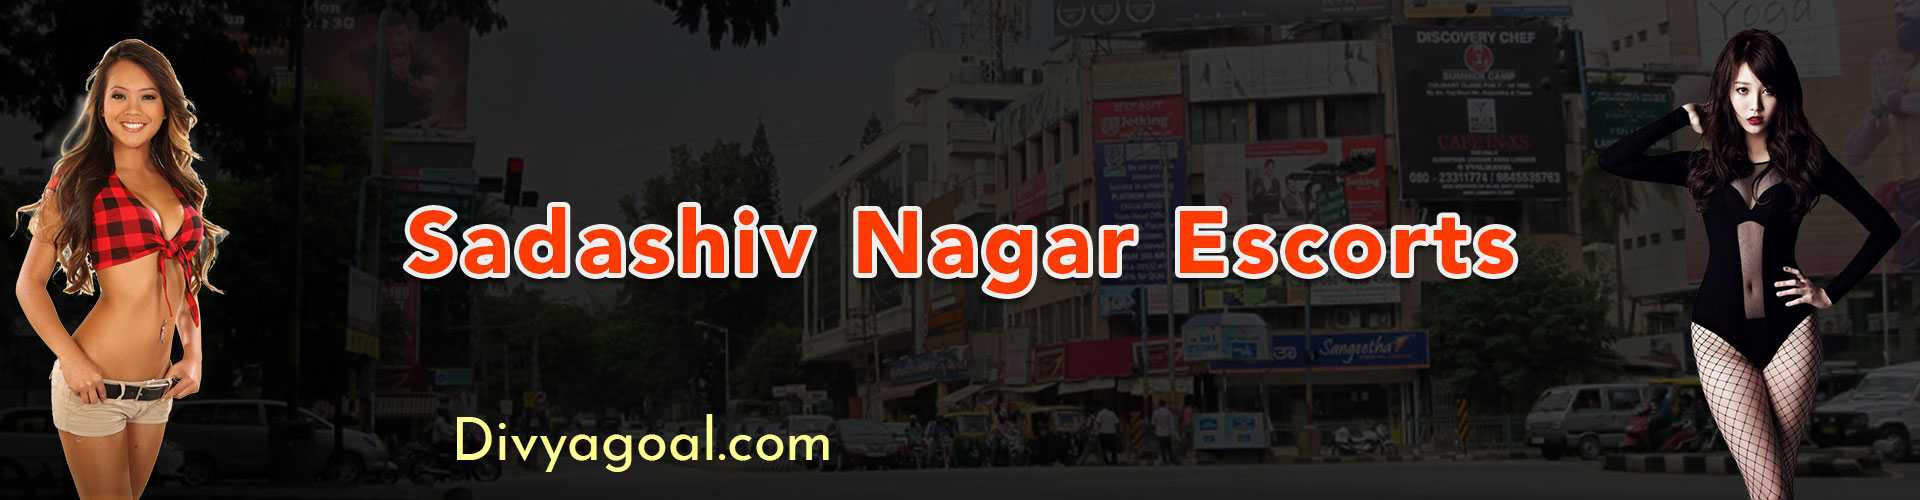 Sadashiv Nagar escorts